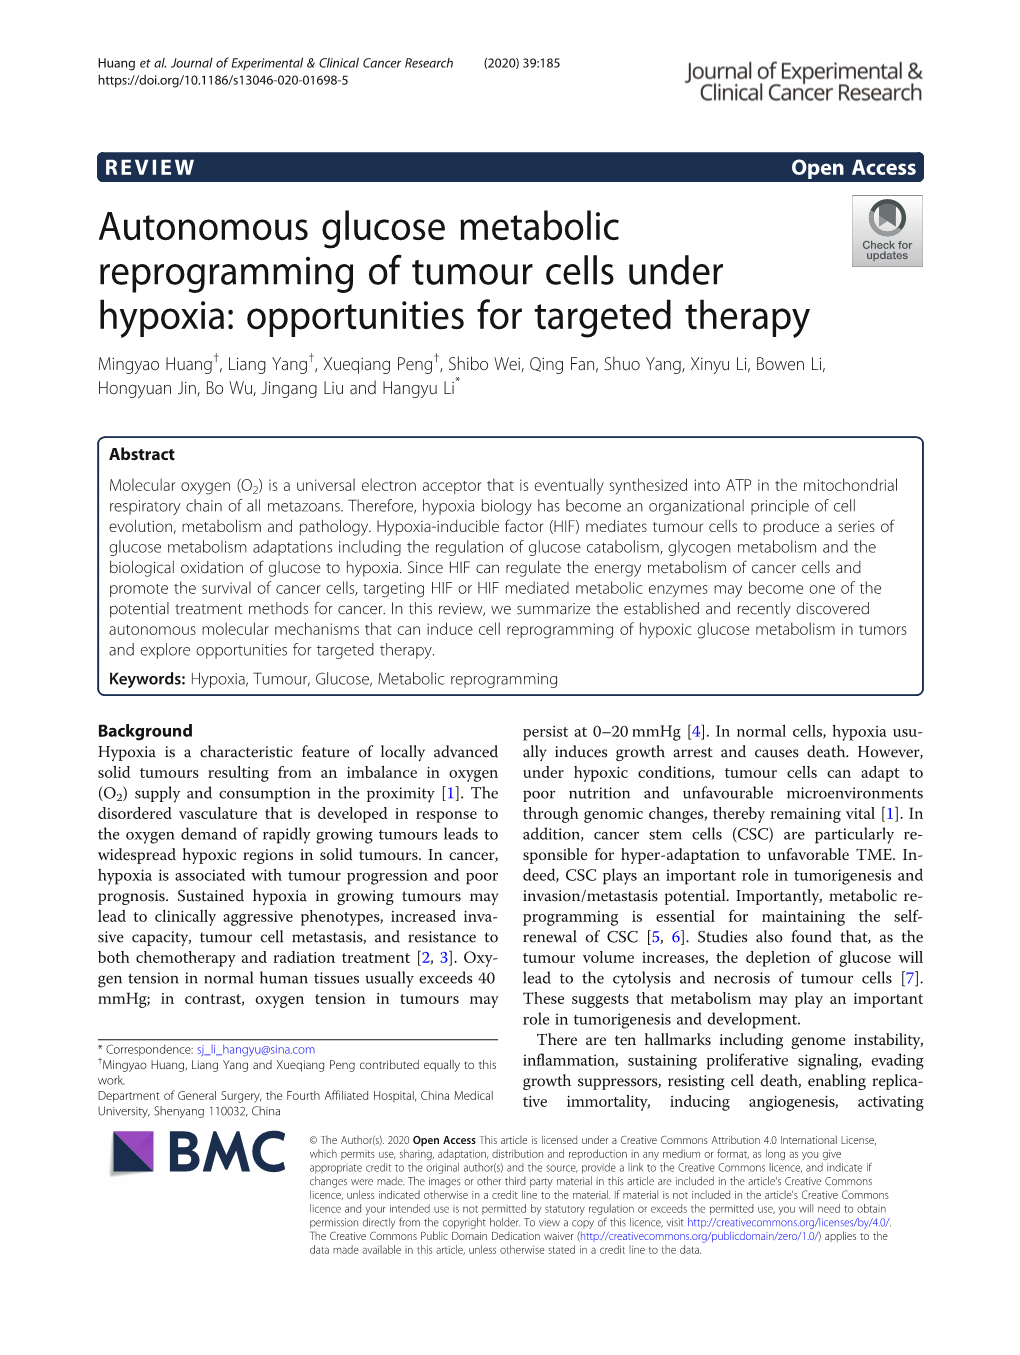 Autonomous Glucose Metabolic Reprogramming of Tumour Cells